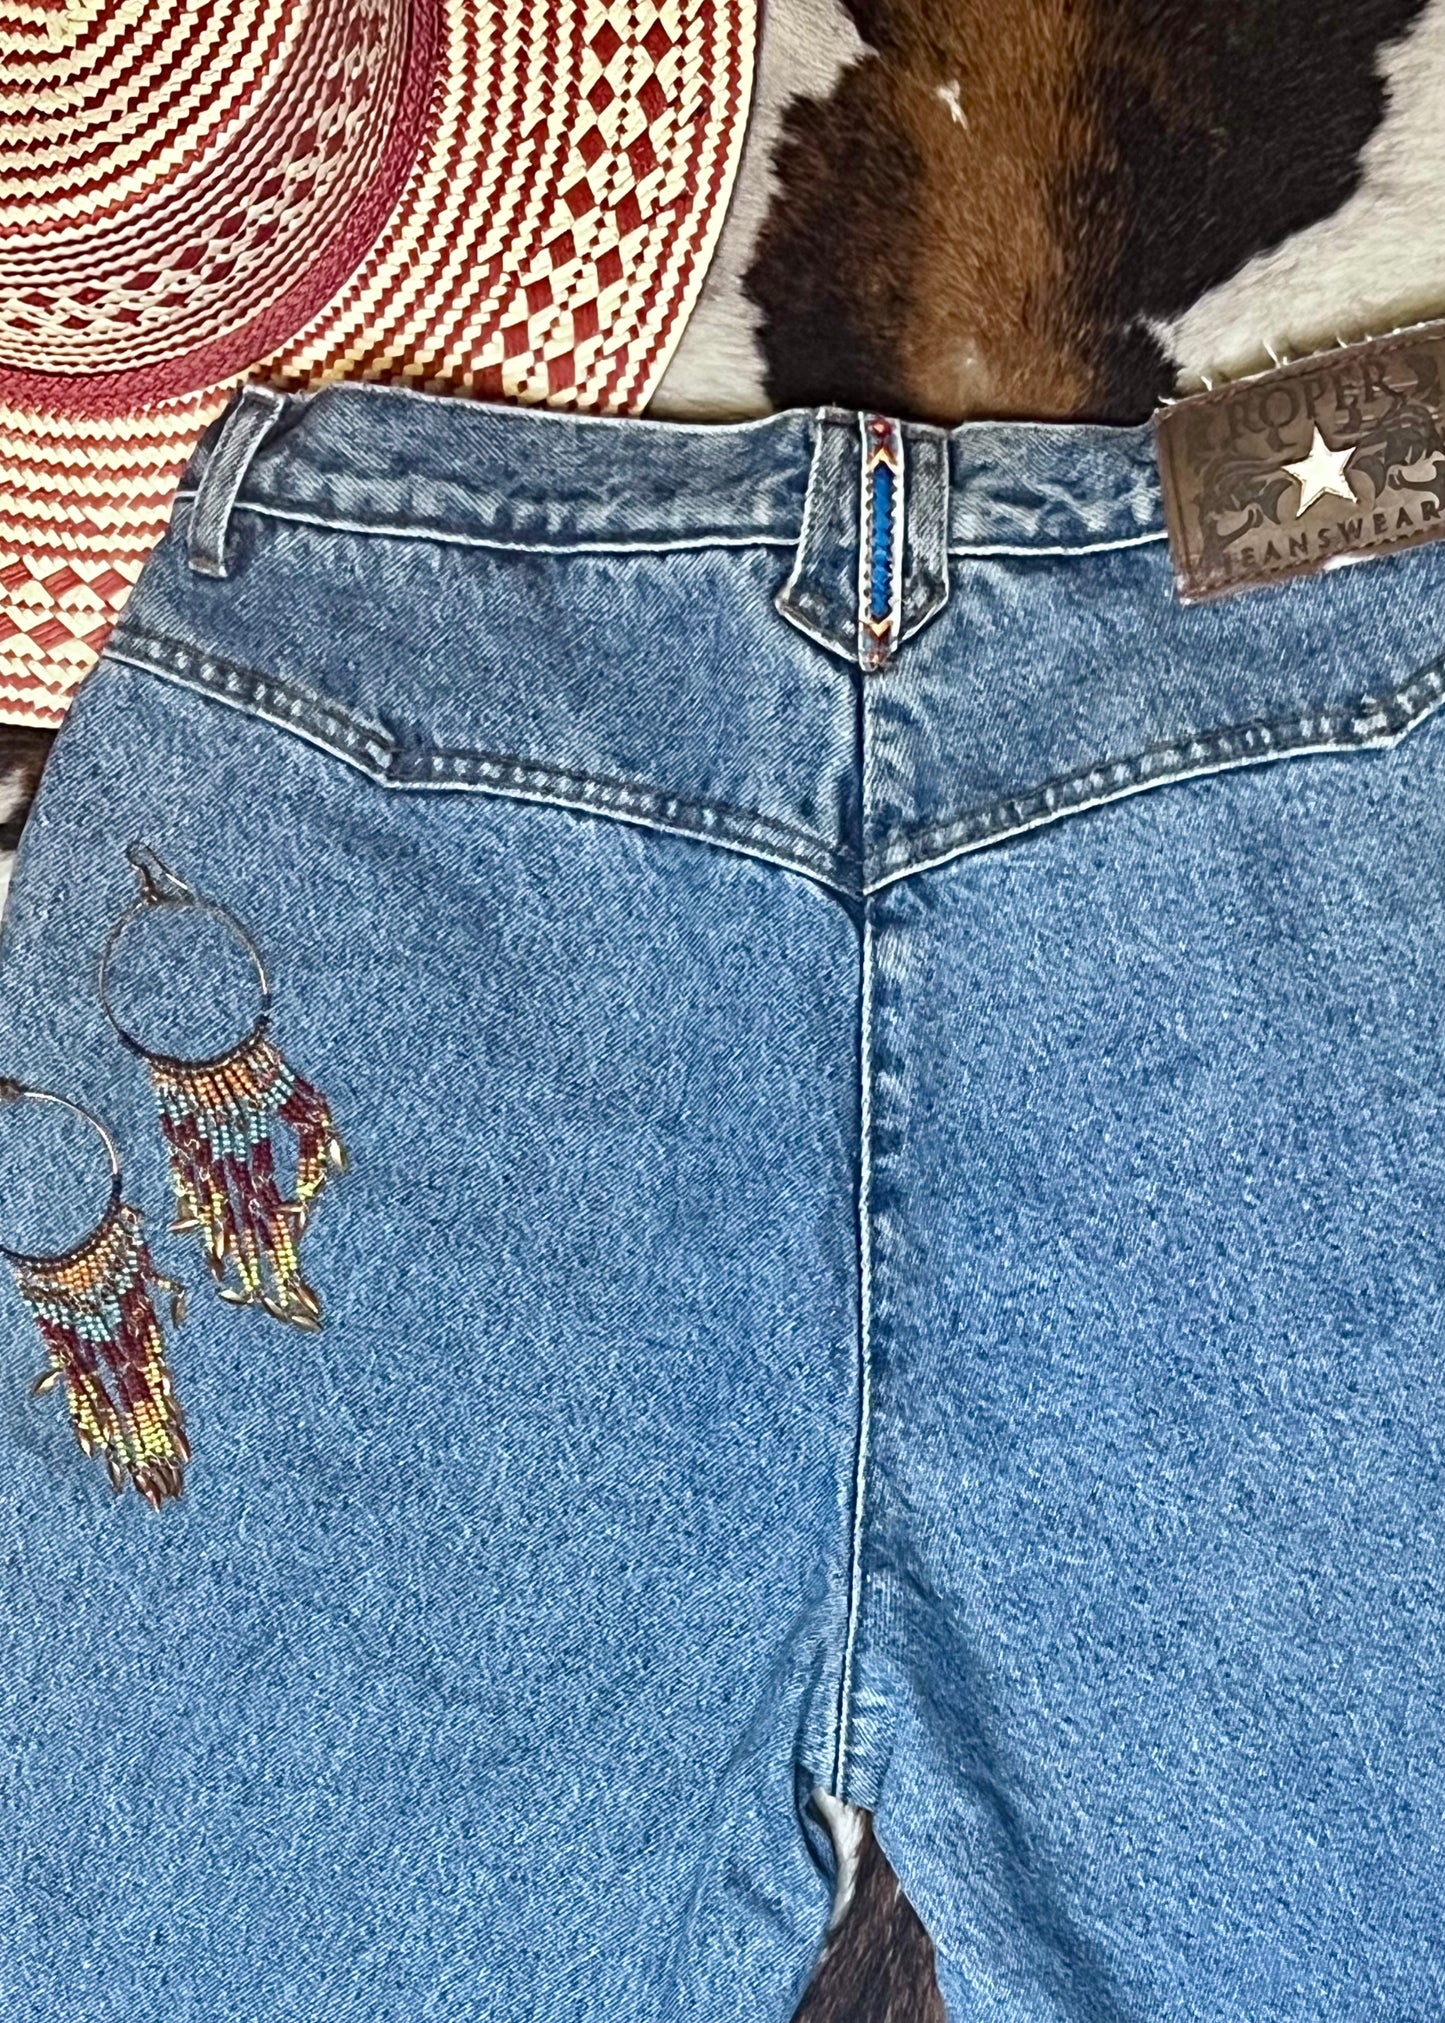 Vintage Roper Beaded Pocket Jeans 34inchesX35.5”